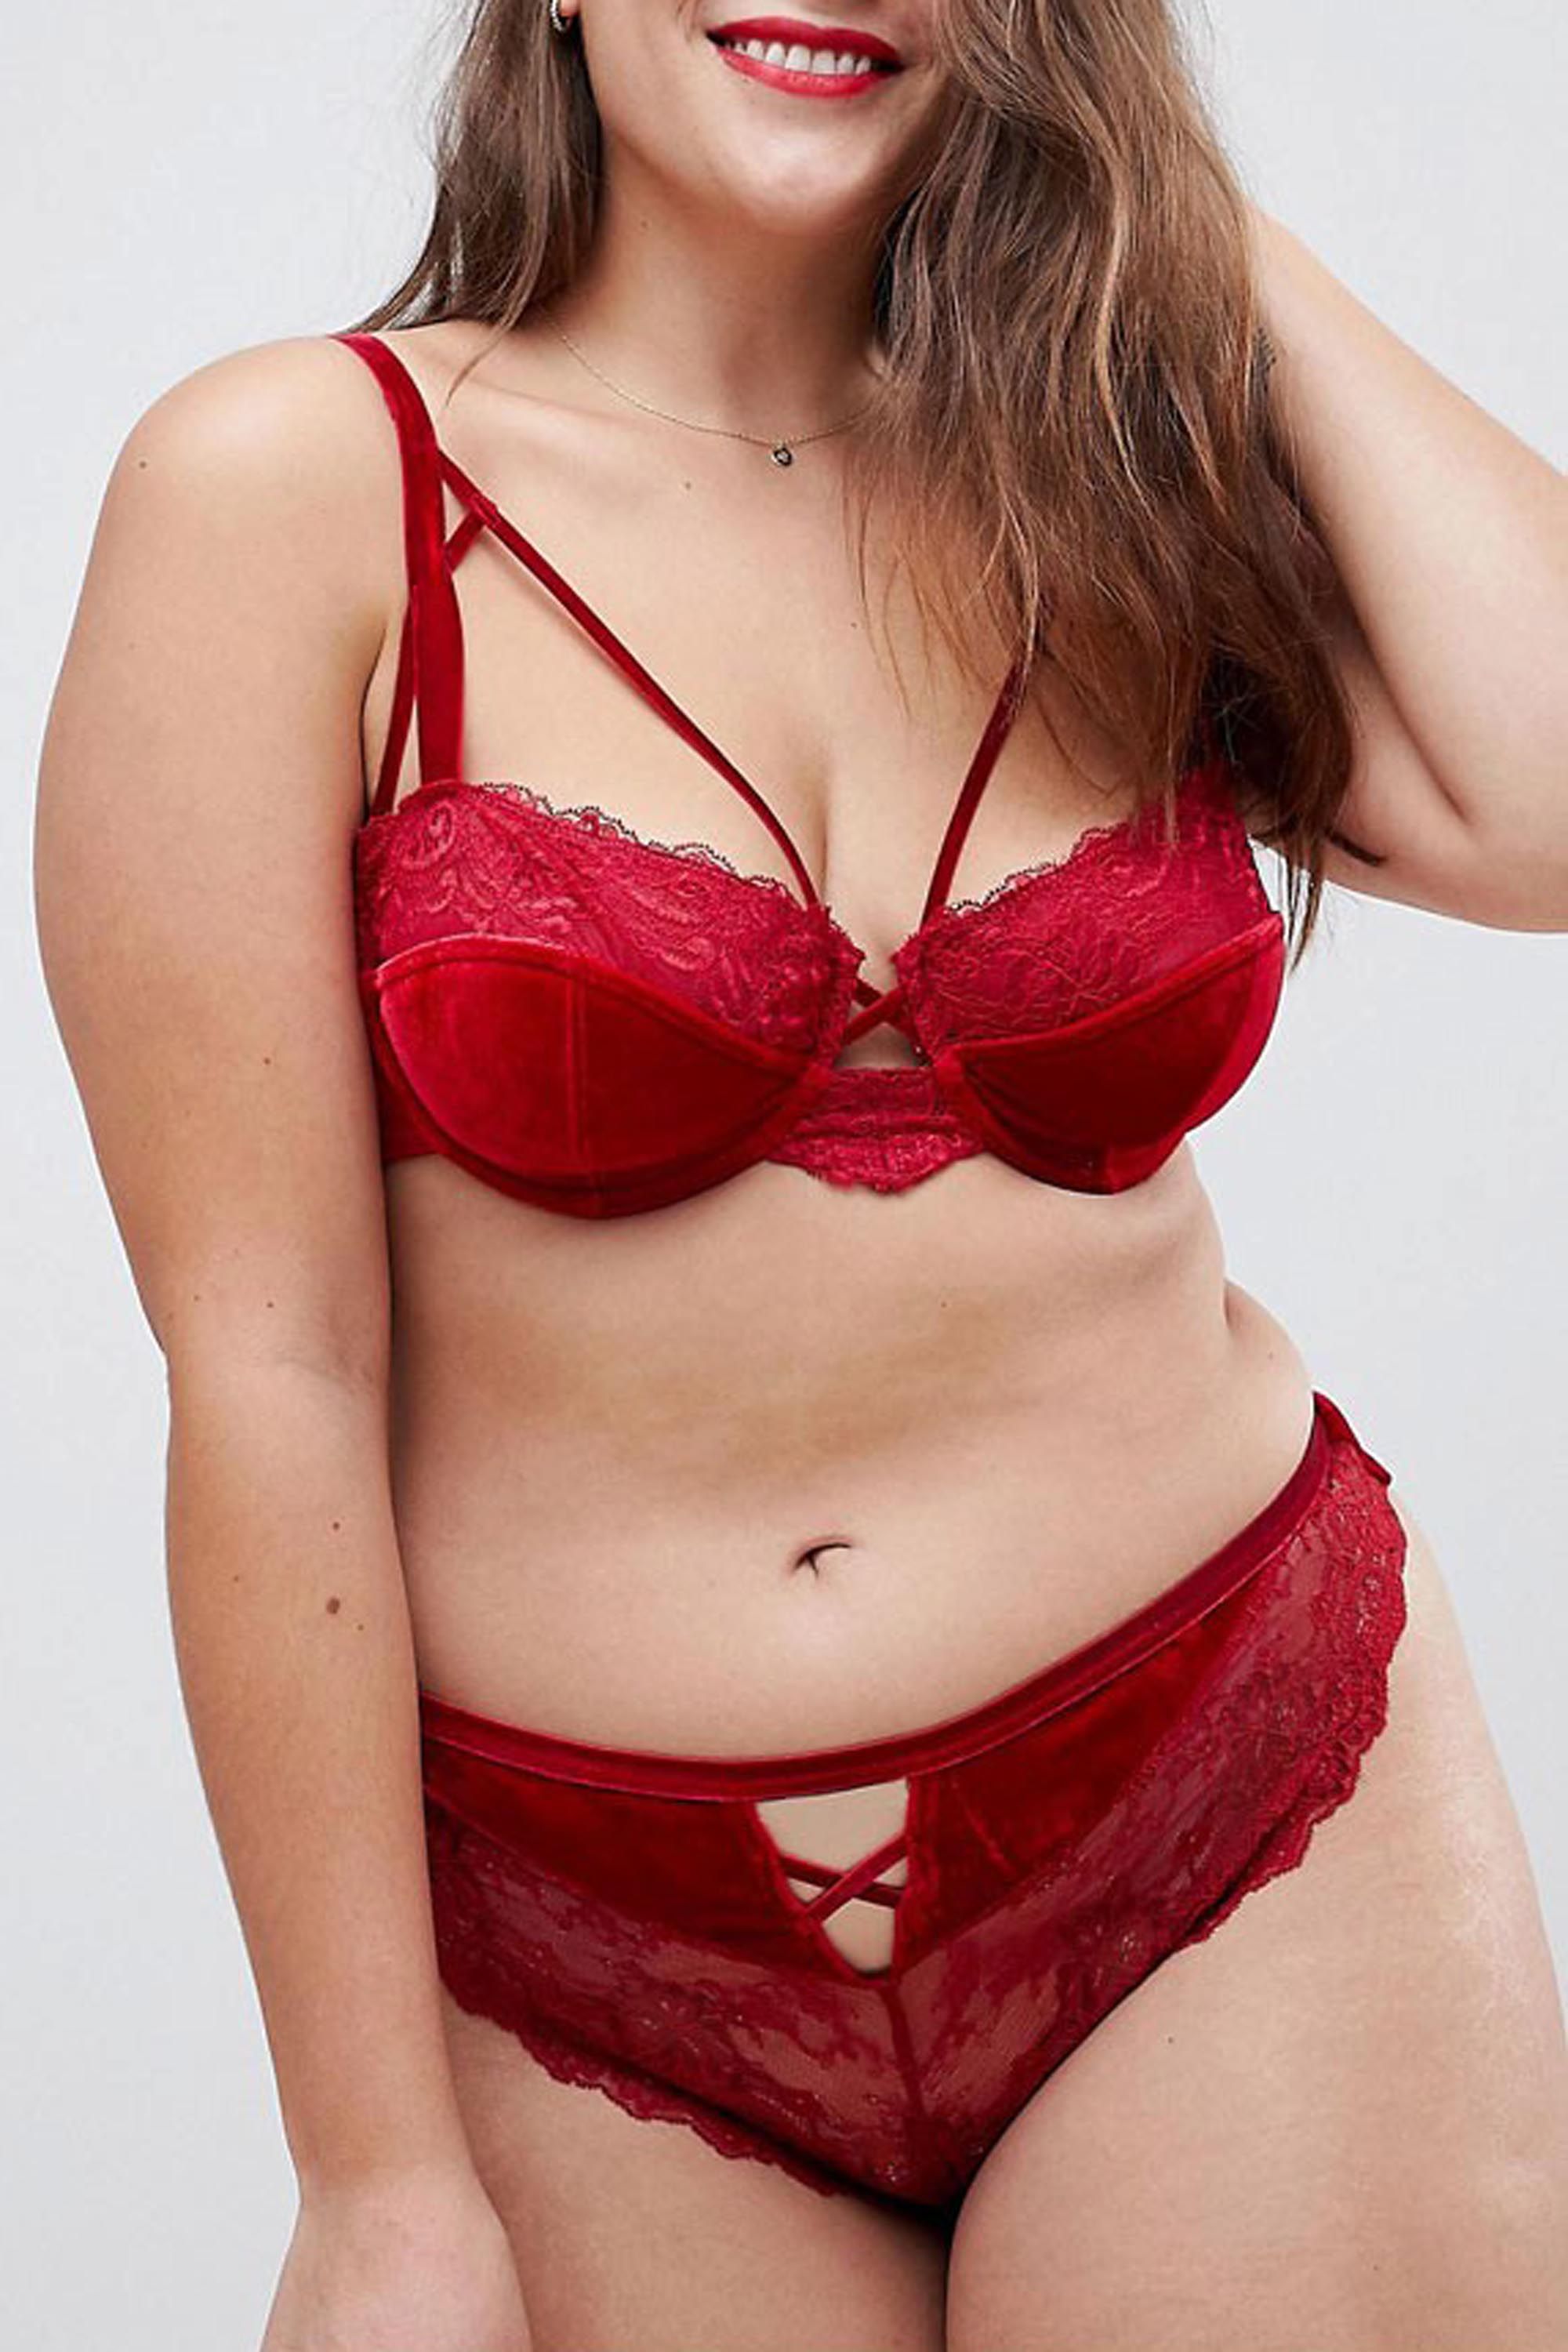 Red, Lingerie, Bras & Women's Underwear